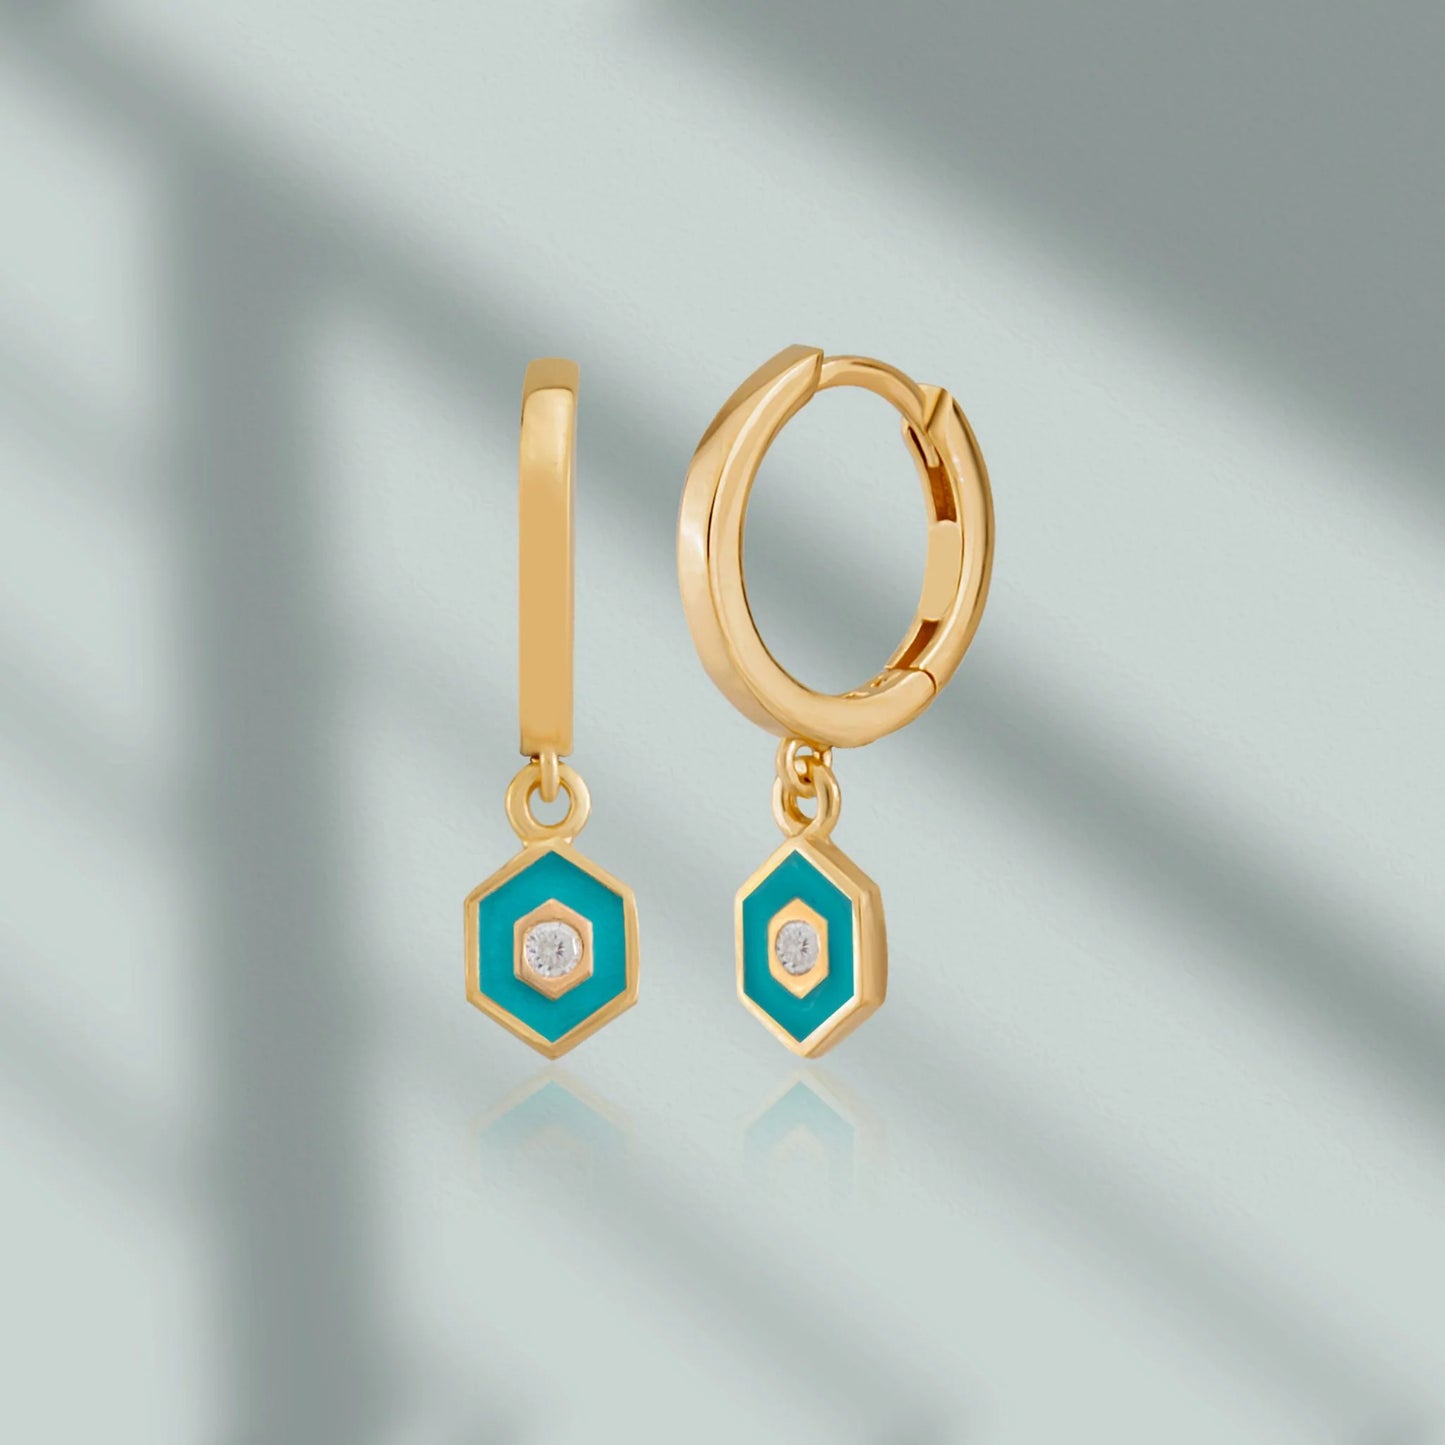 Minimalist Vivid Hoop Earrings earrings LUNARITY GARAGE Turquoise  